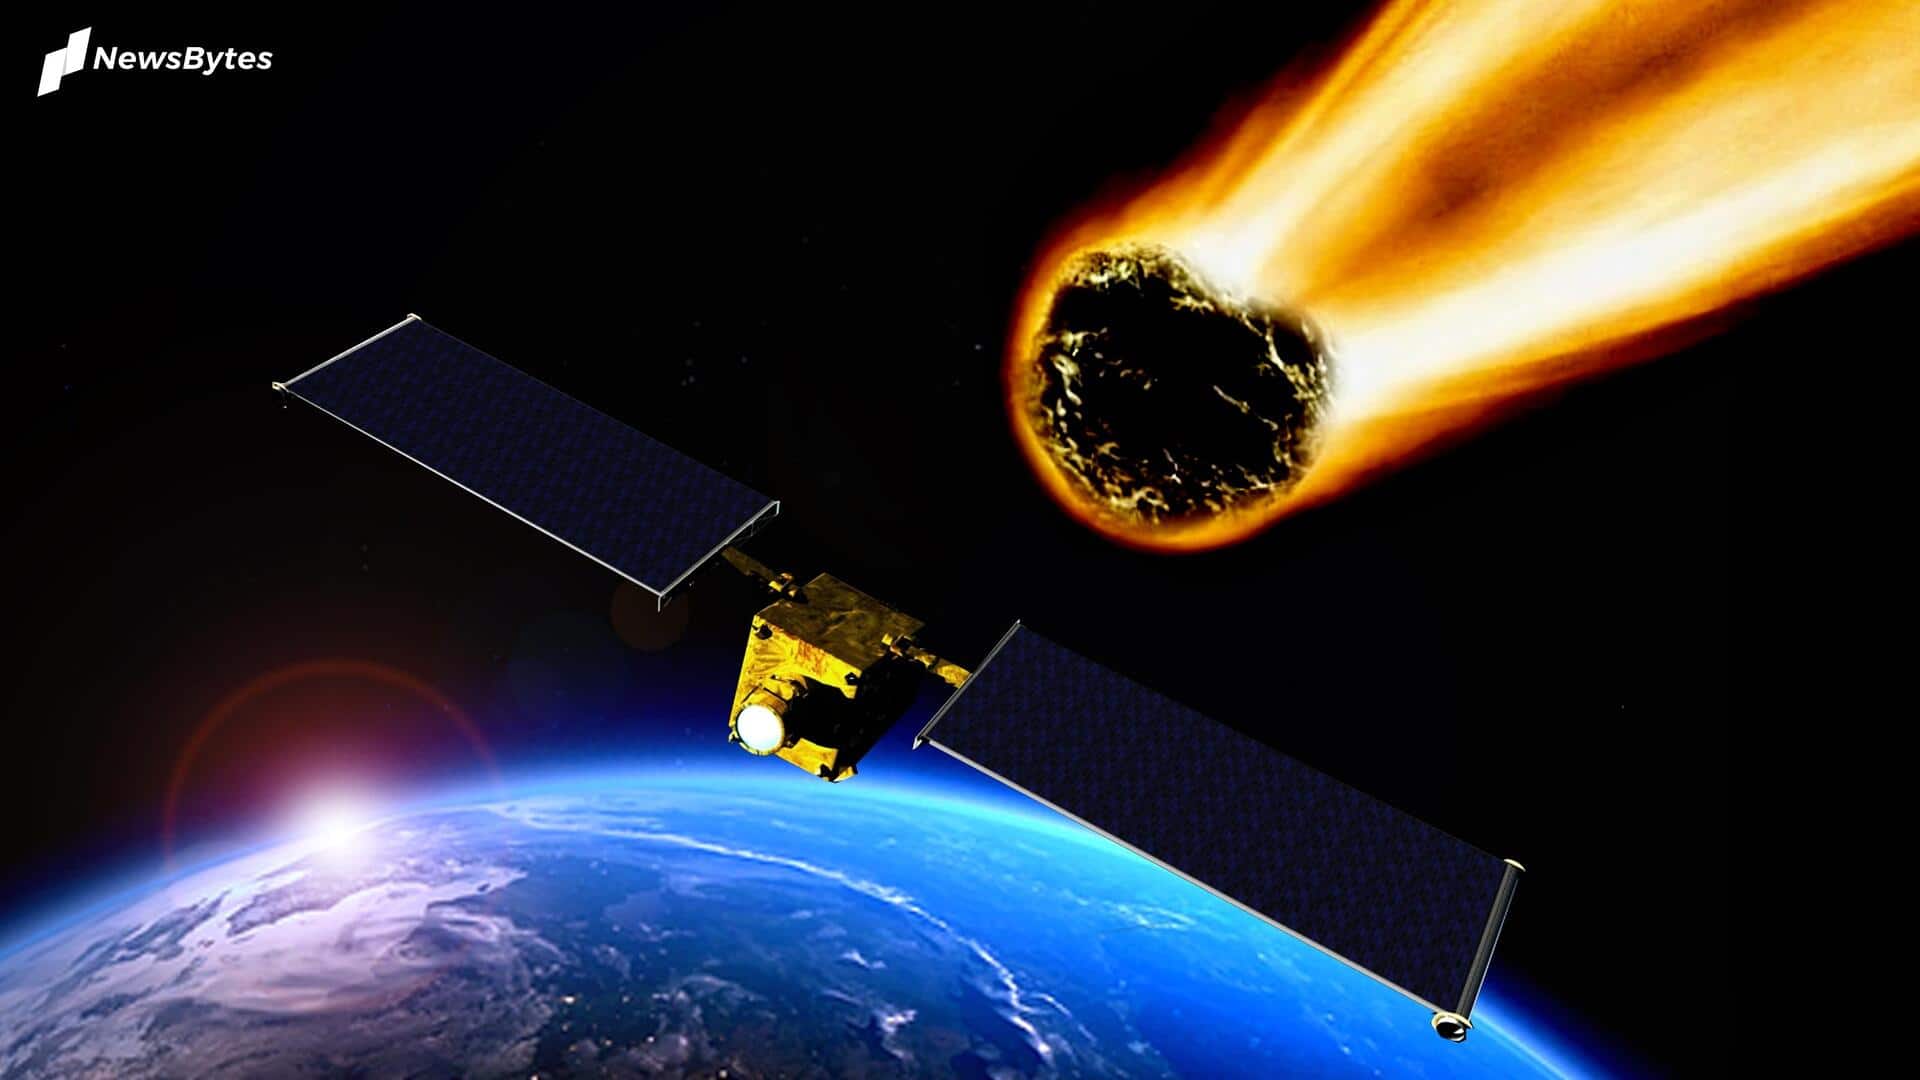 नासा ने जारी किया अलर्ट, आज पृथ्वी के करीब पहुंच सकता है 301 फीट चौड़ा एस्ट्रोयड